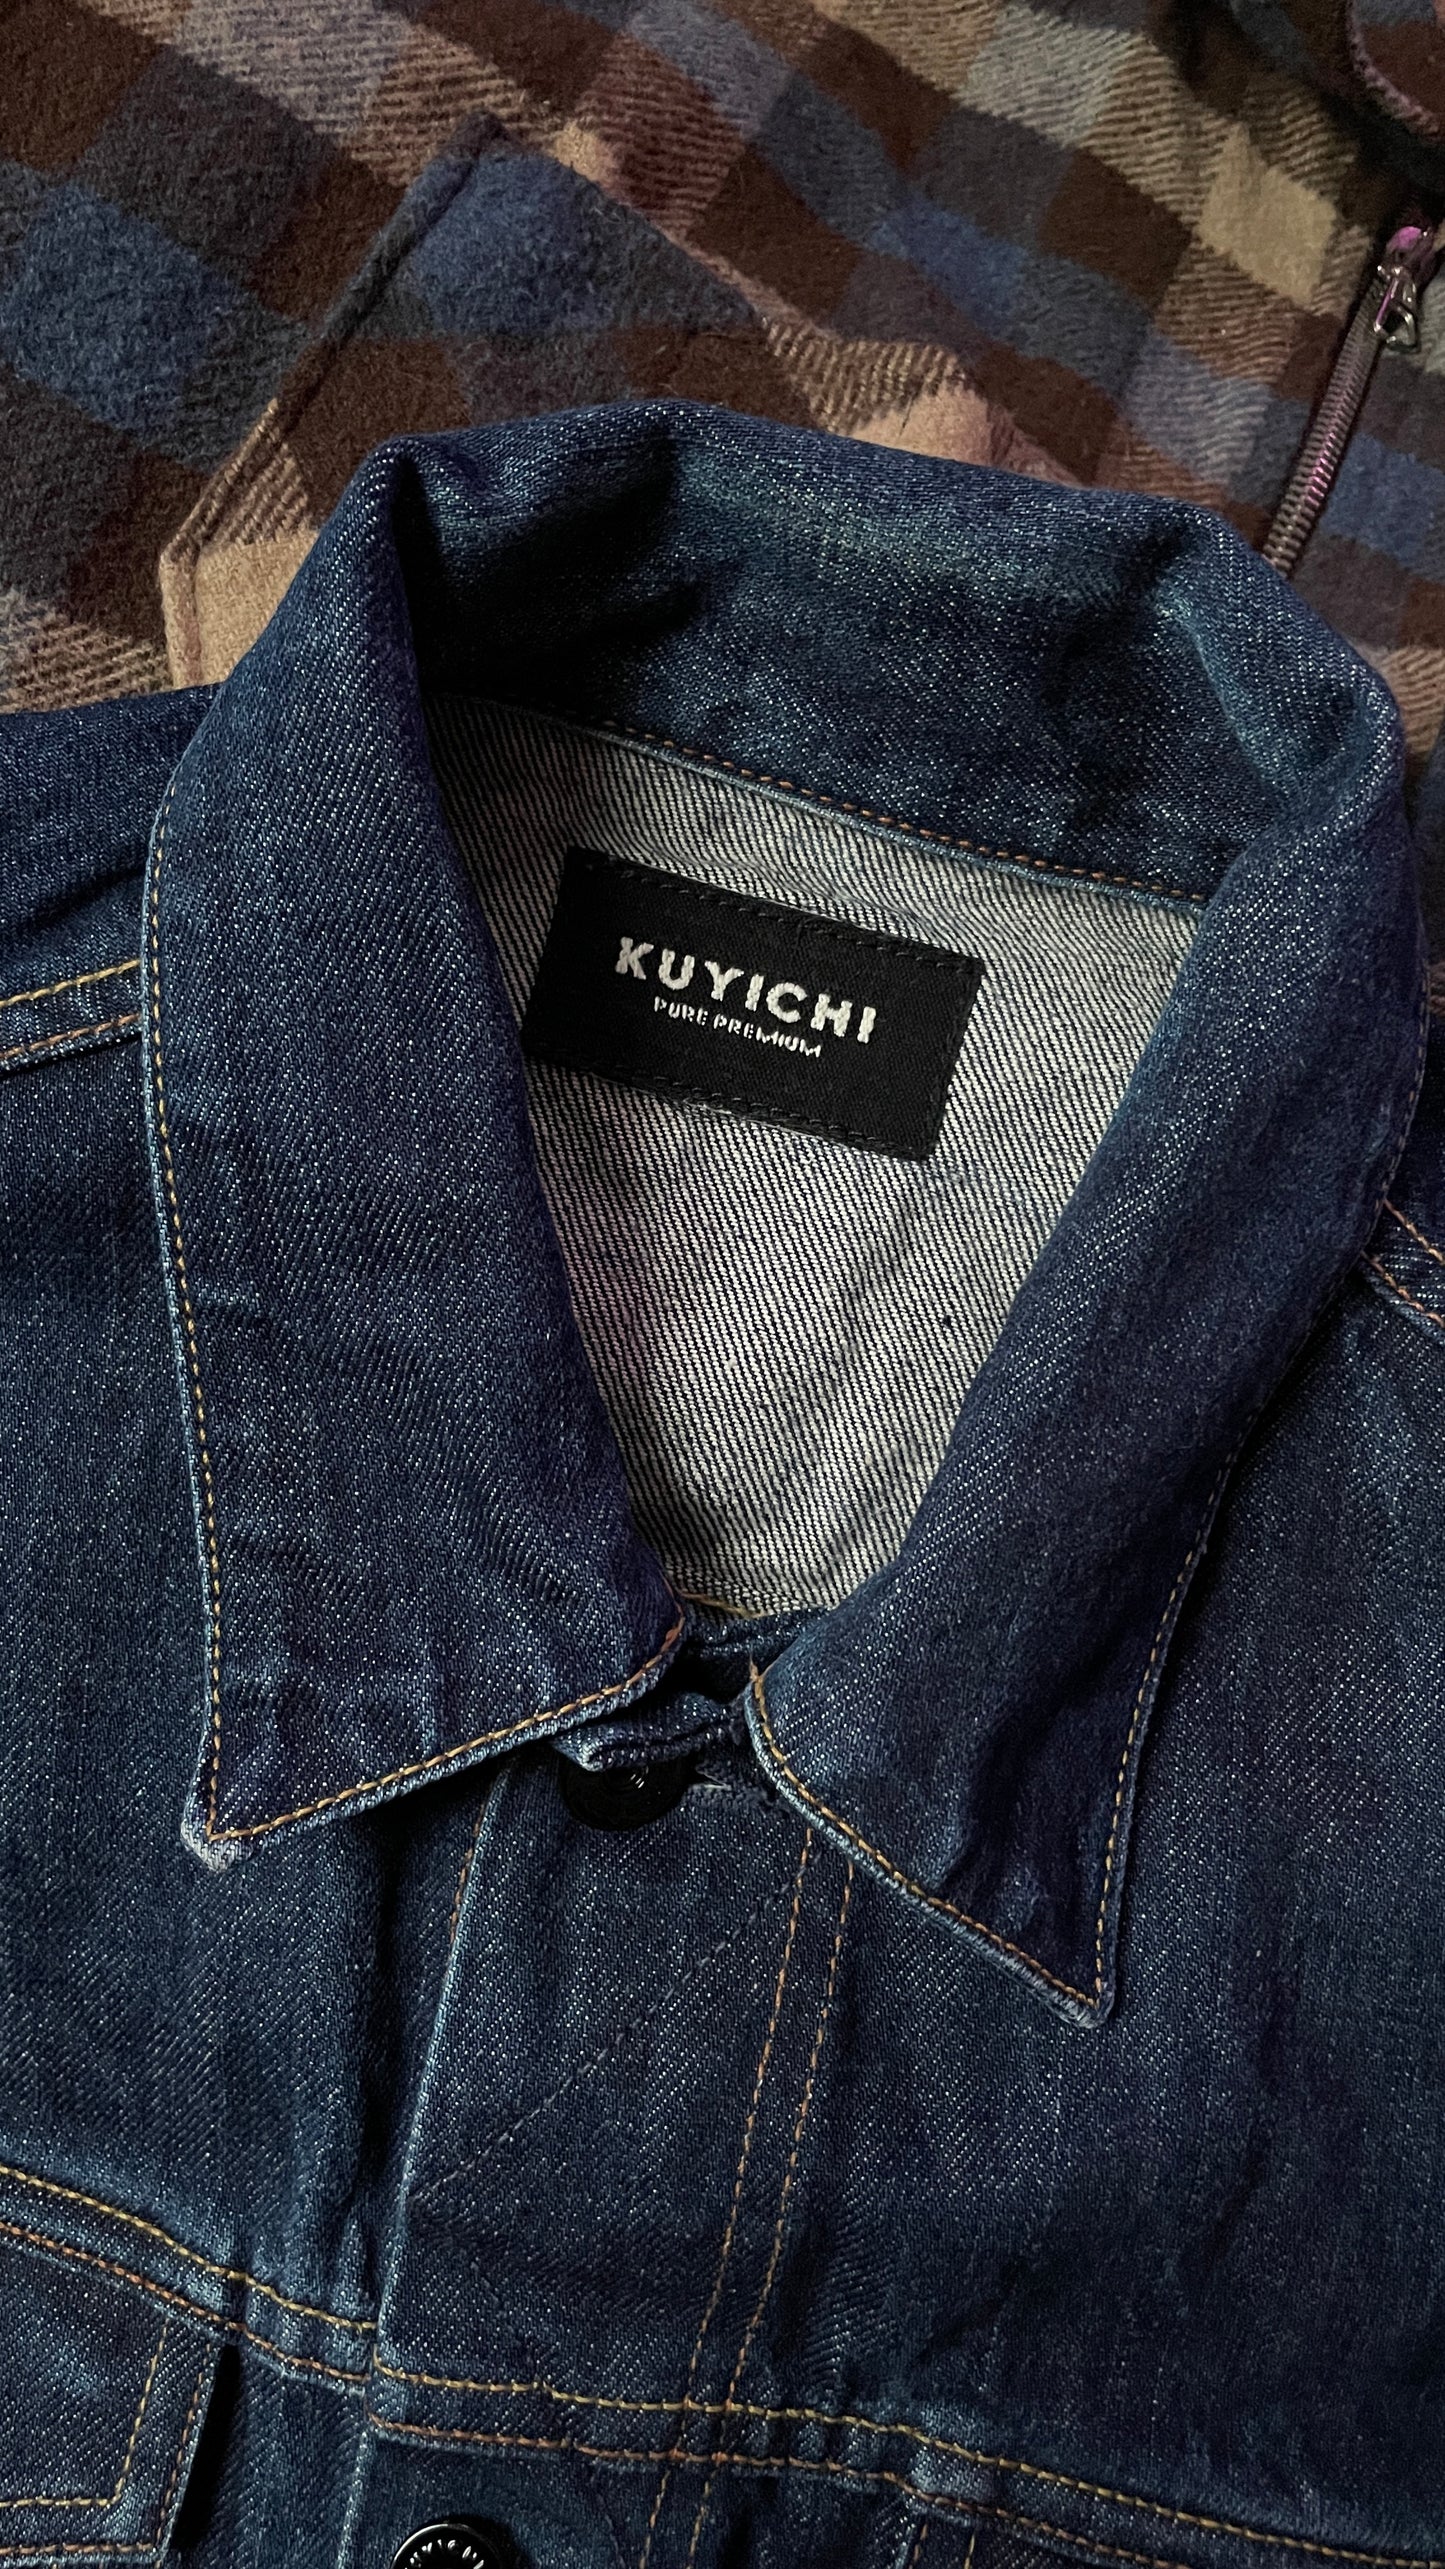 Kuyichi selvedge denim jacket